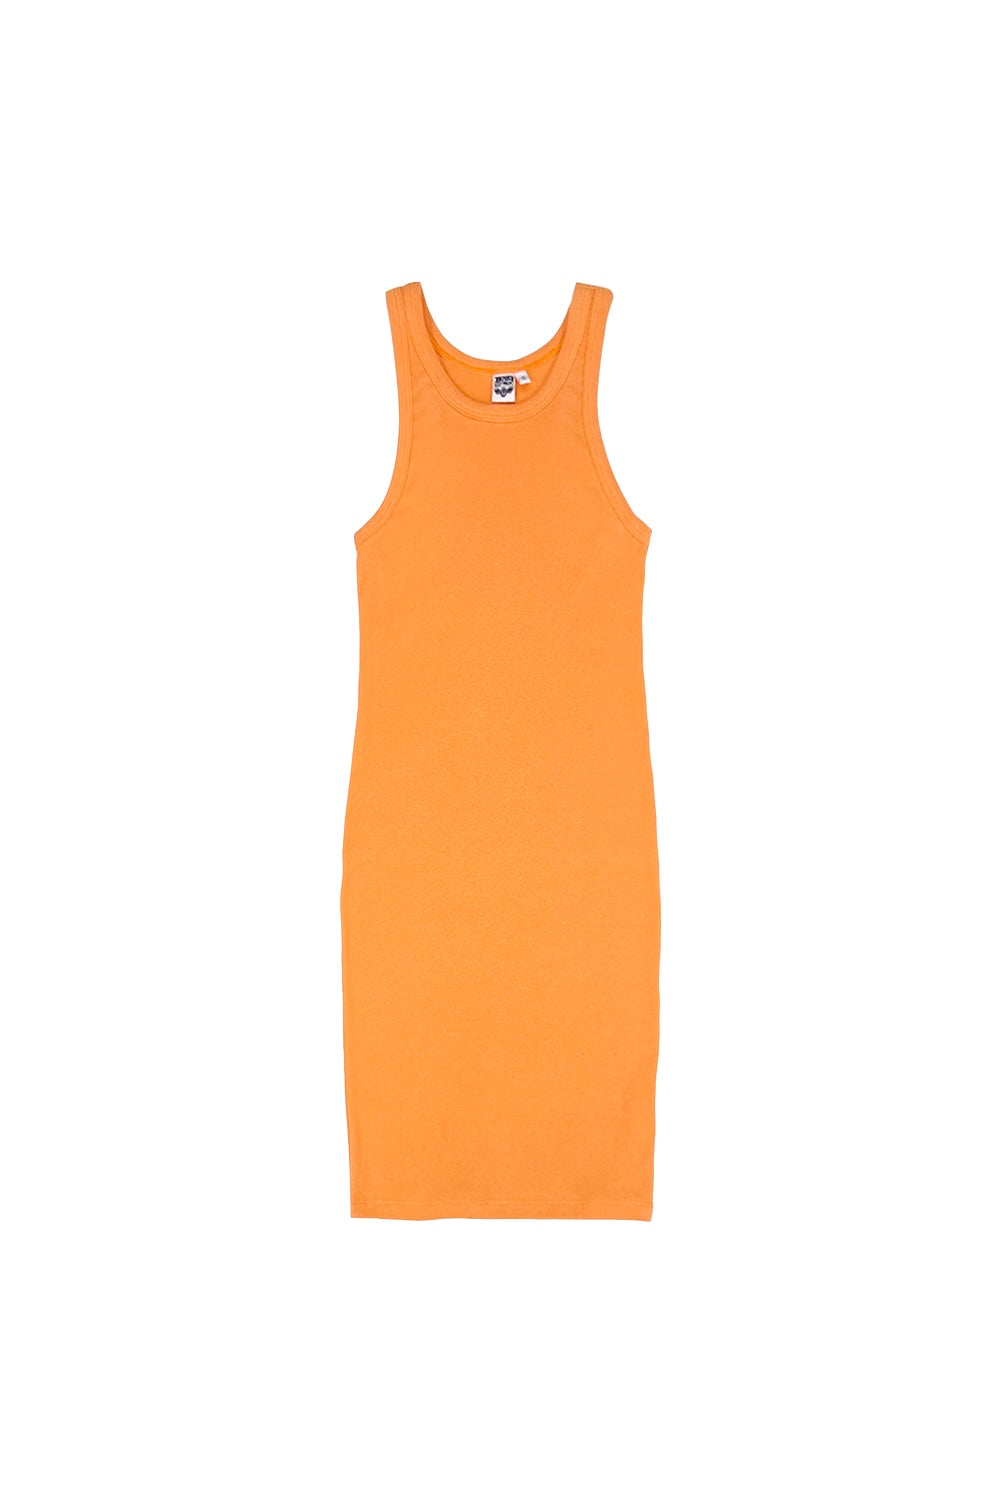 Daphne Dress | Jungmaven Hemp Clothing & Accessories / Color: Apricot Crush